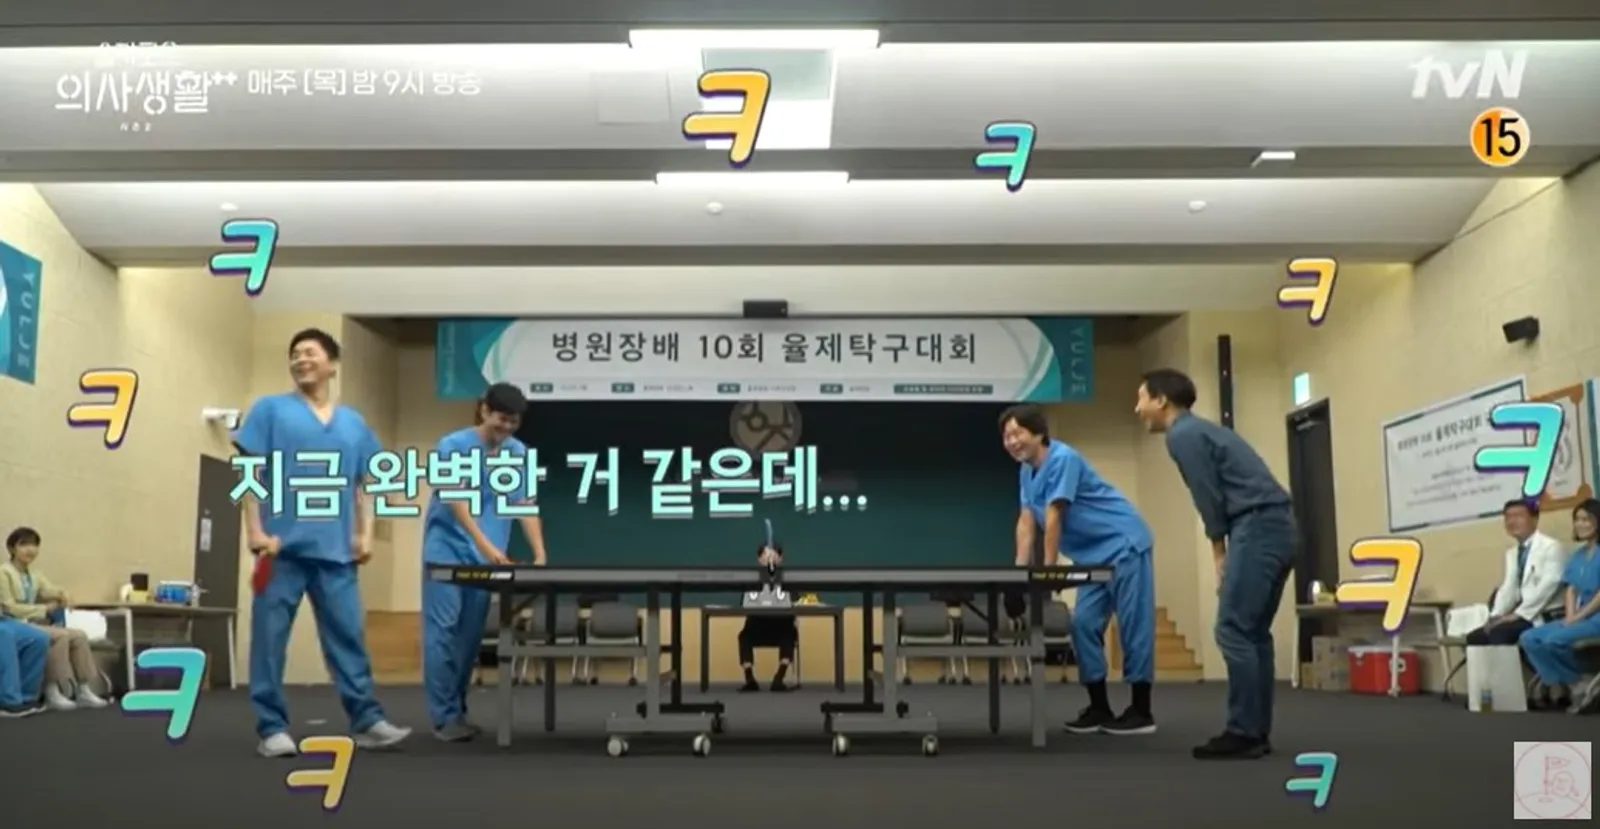 15 Potret Geng Dokter di Balik Layar Hospital Playlist 2, Super Kocak!